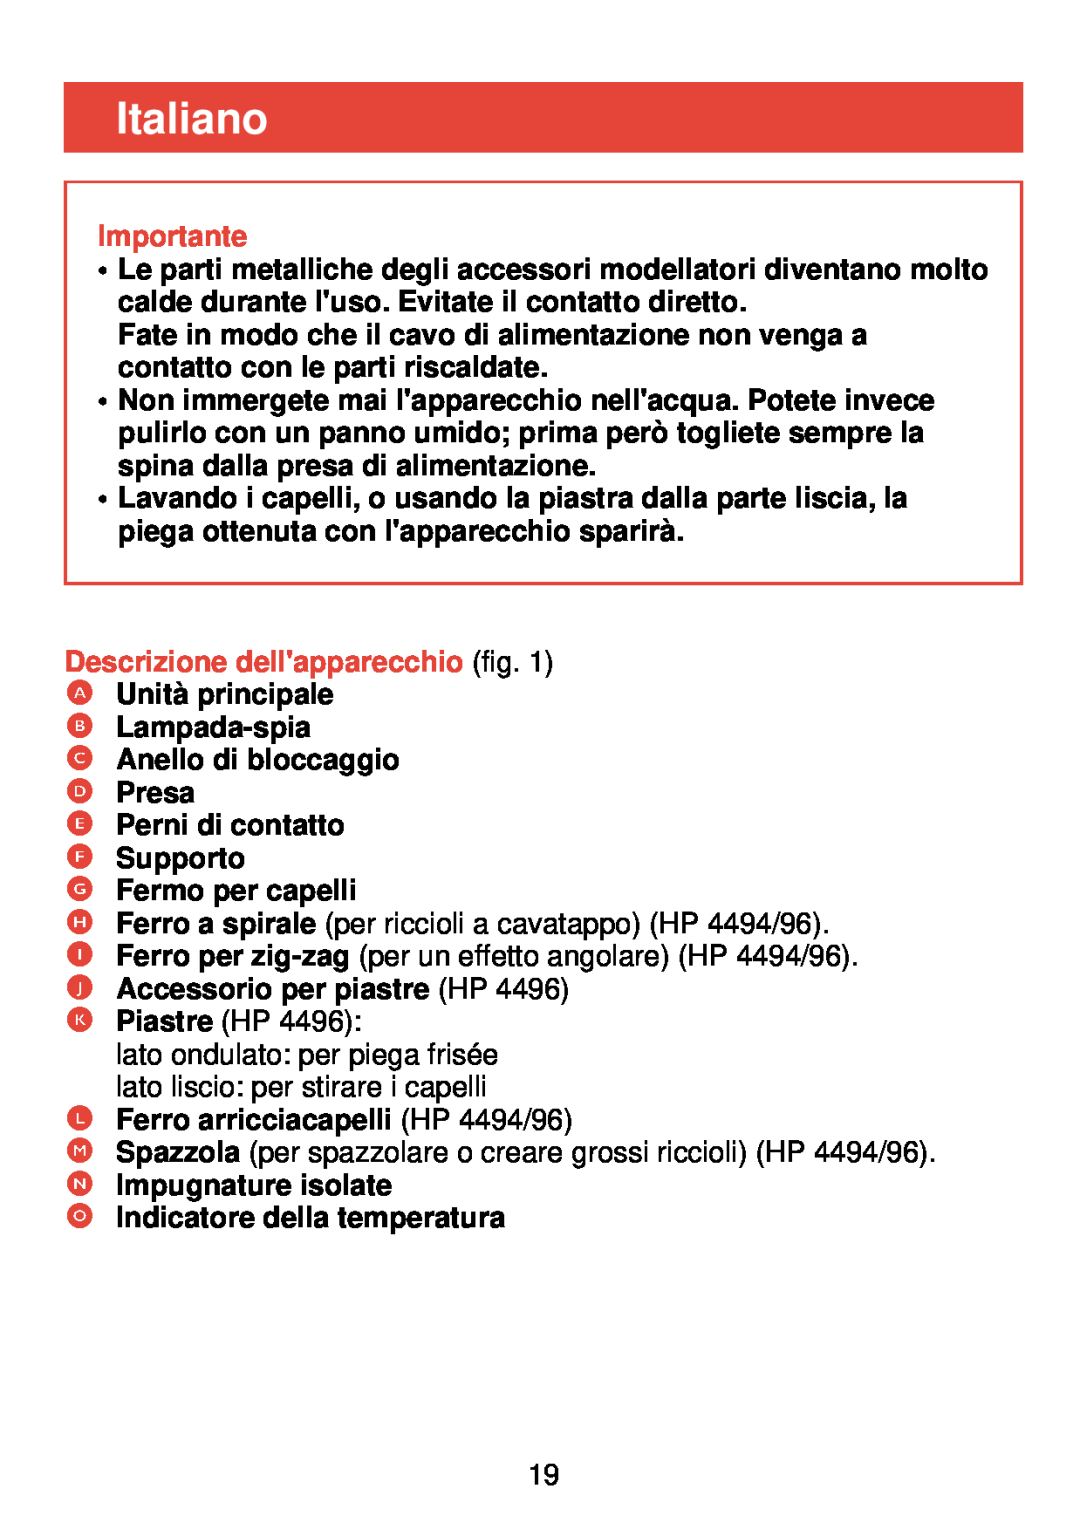 Philips HP 4490, HP 4494, HP 4496 manual Italiano, Importante, Descrizione dellapparecchio fig 